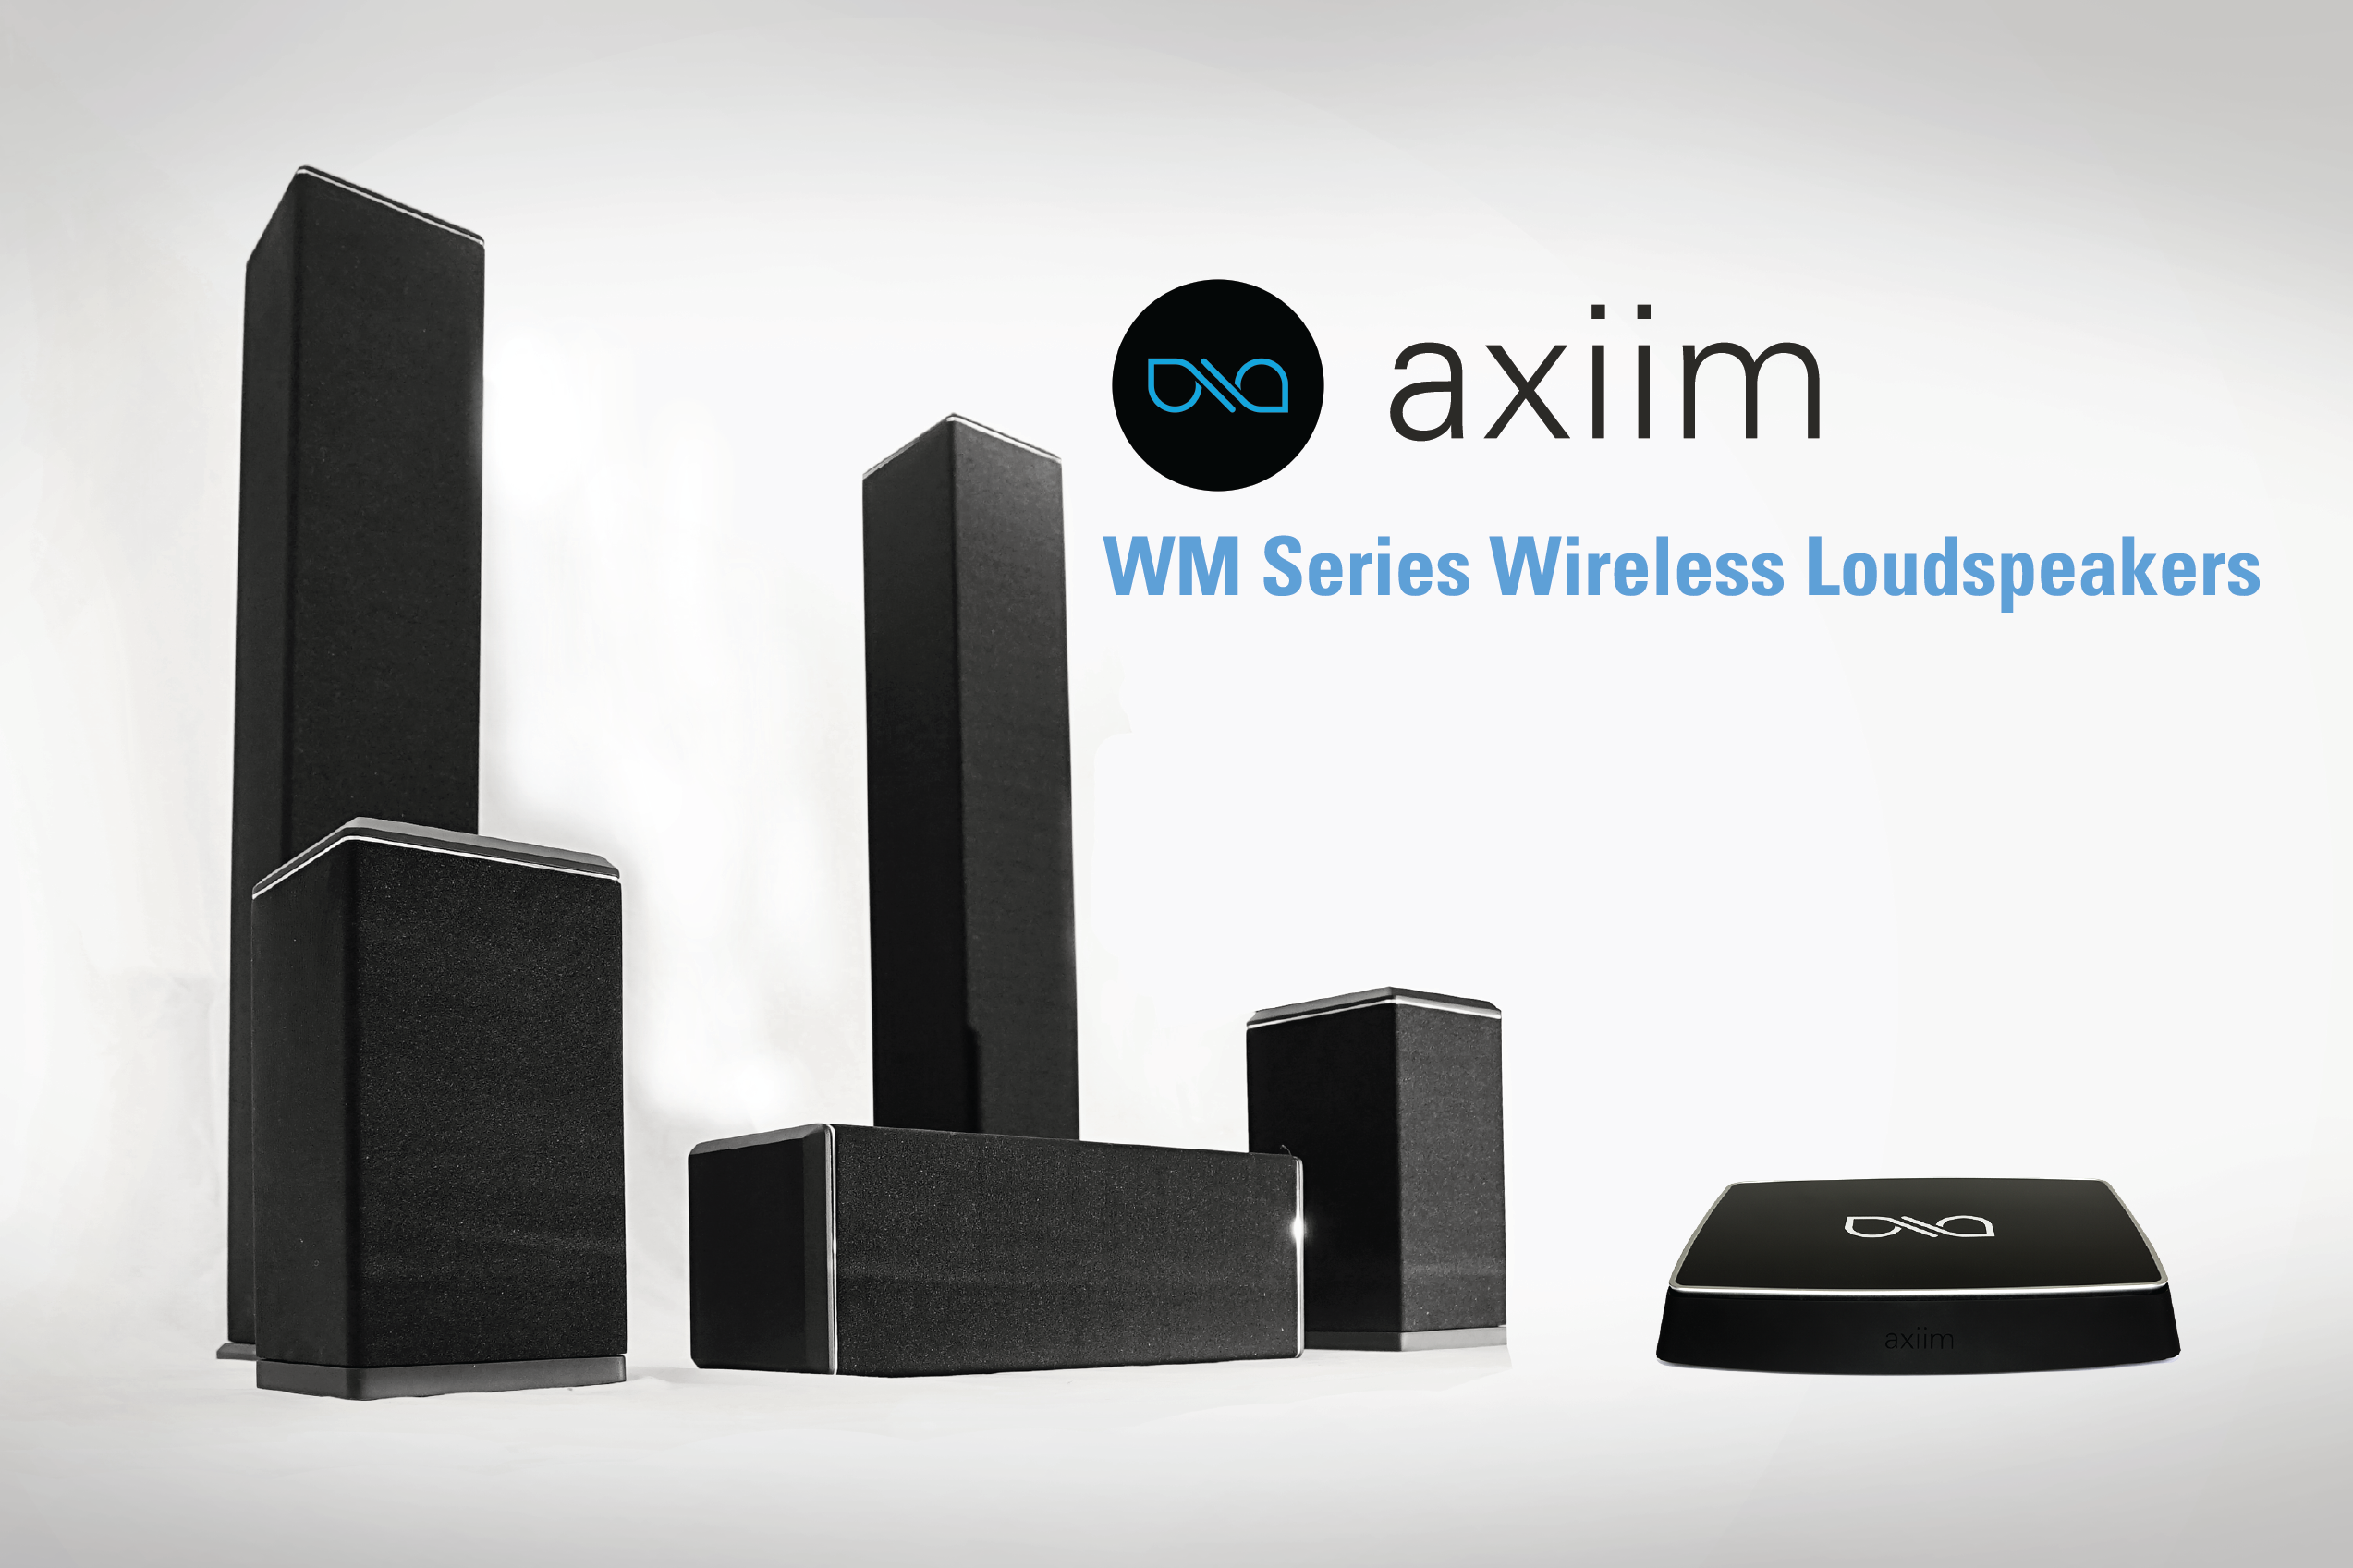 Axiim WM Series Wireless Loudspeakers